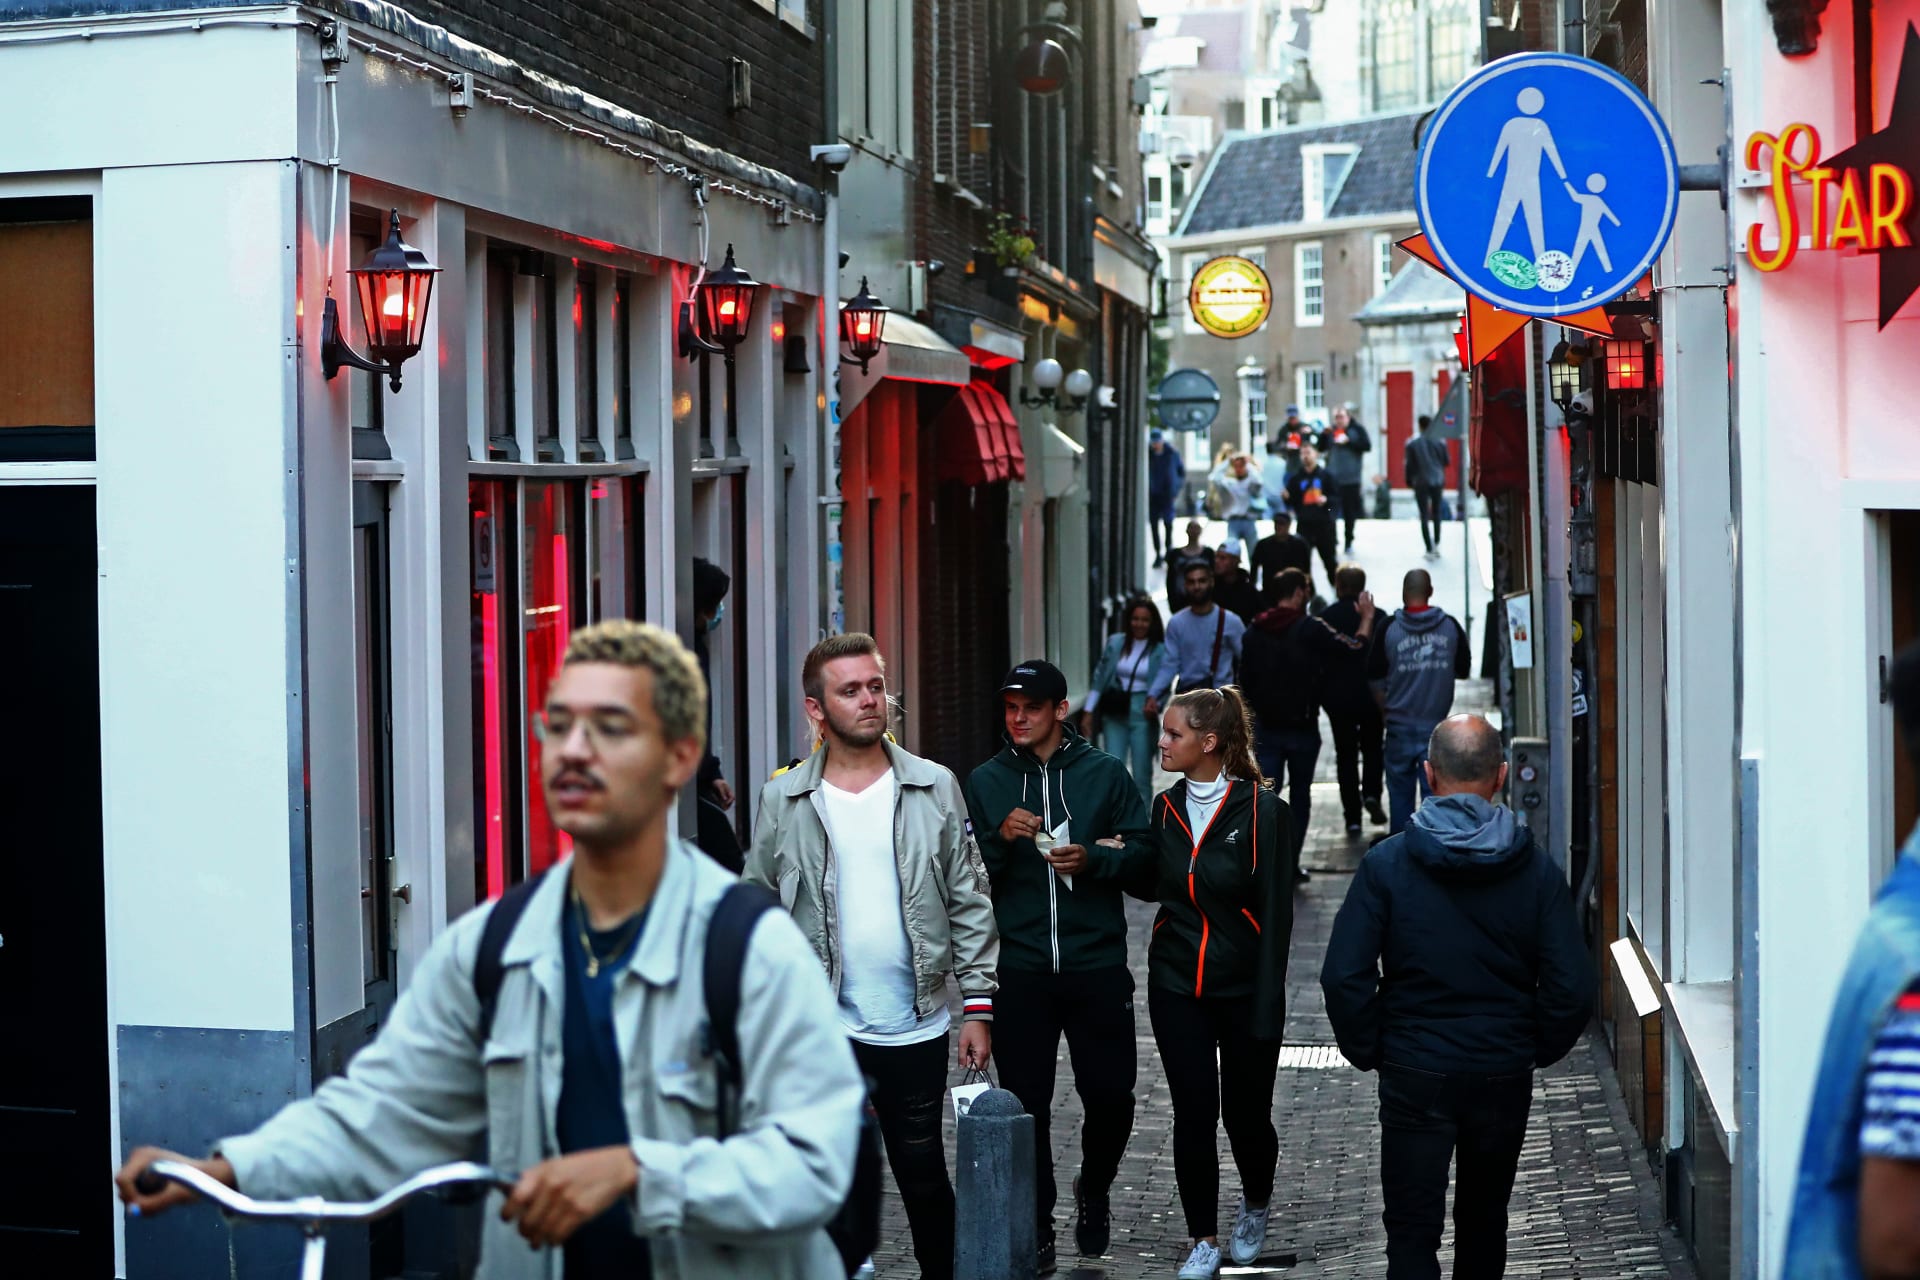 Proslulá amsterdamská Čtvrť červených luceren